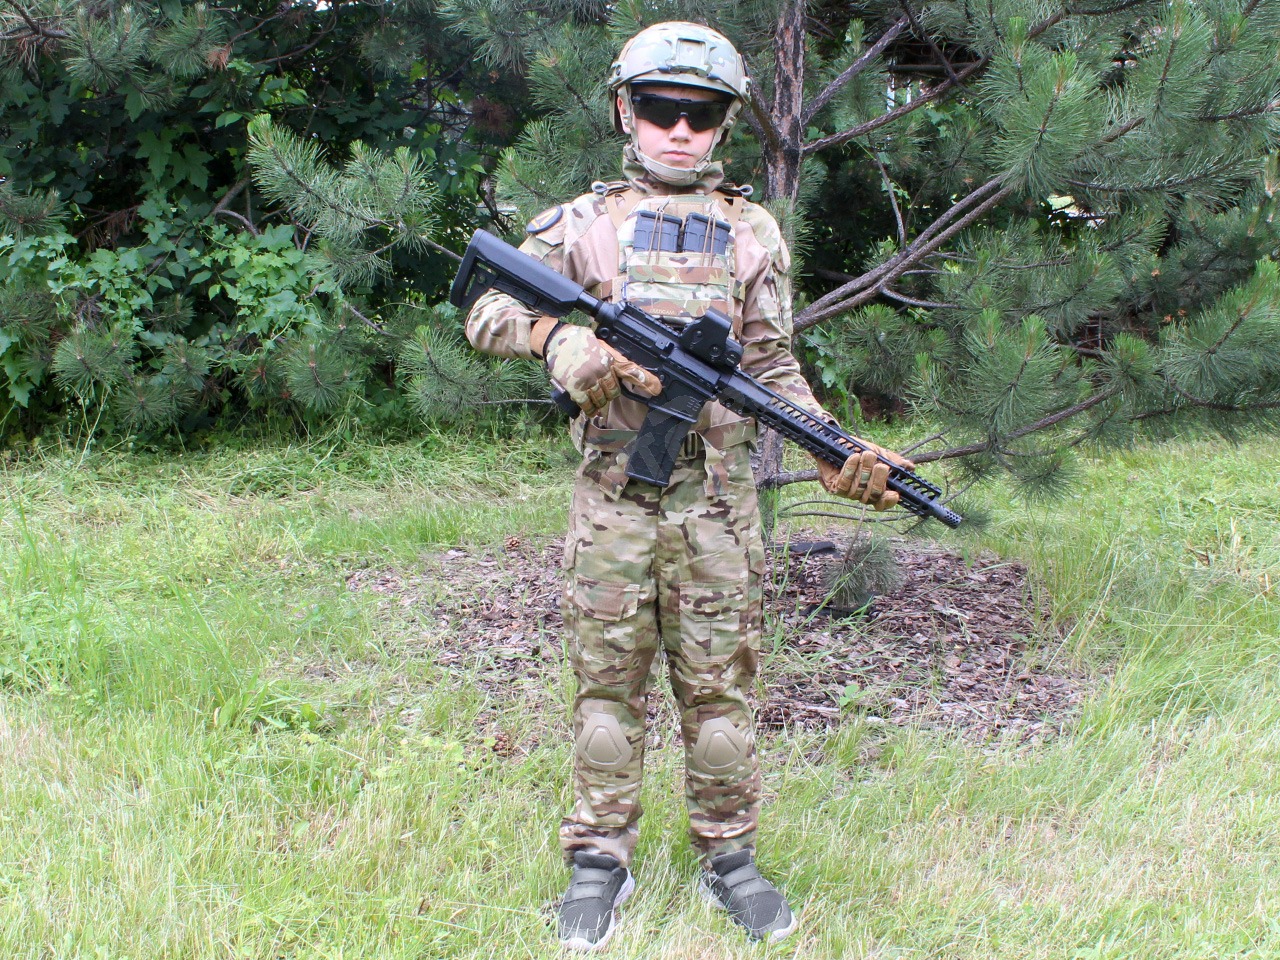 G3 Combat suit For kids - Multicam, 130-140cm [EmersonGear]